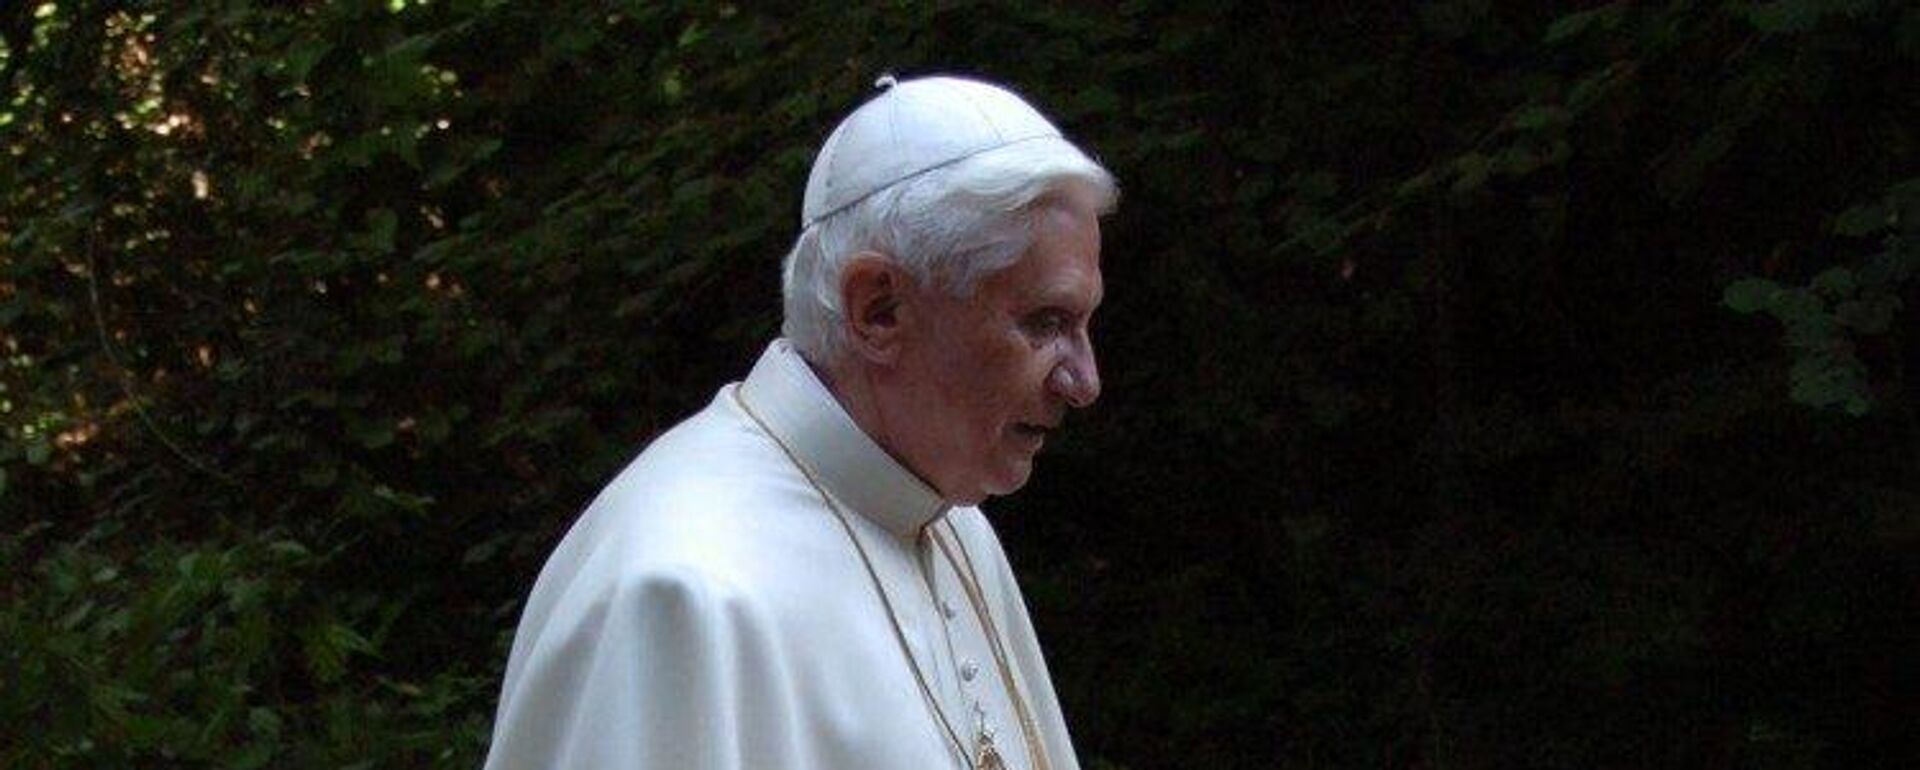 El papa Benedicto XVI, quien falleció el 31 de diciembre de 2022 - Sputnik Mundo, 1920, 02.01.2023